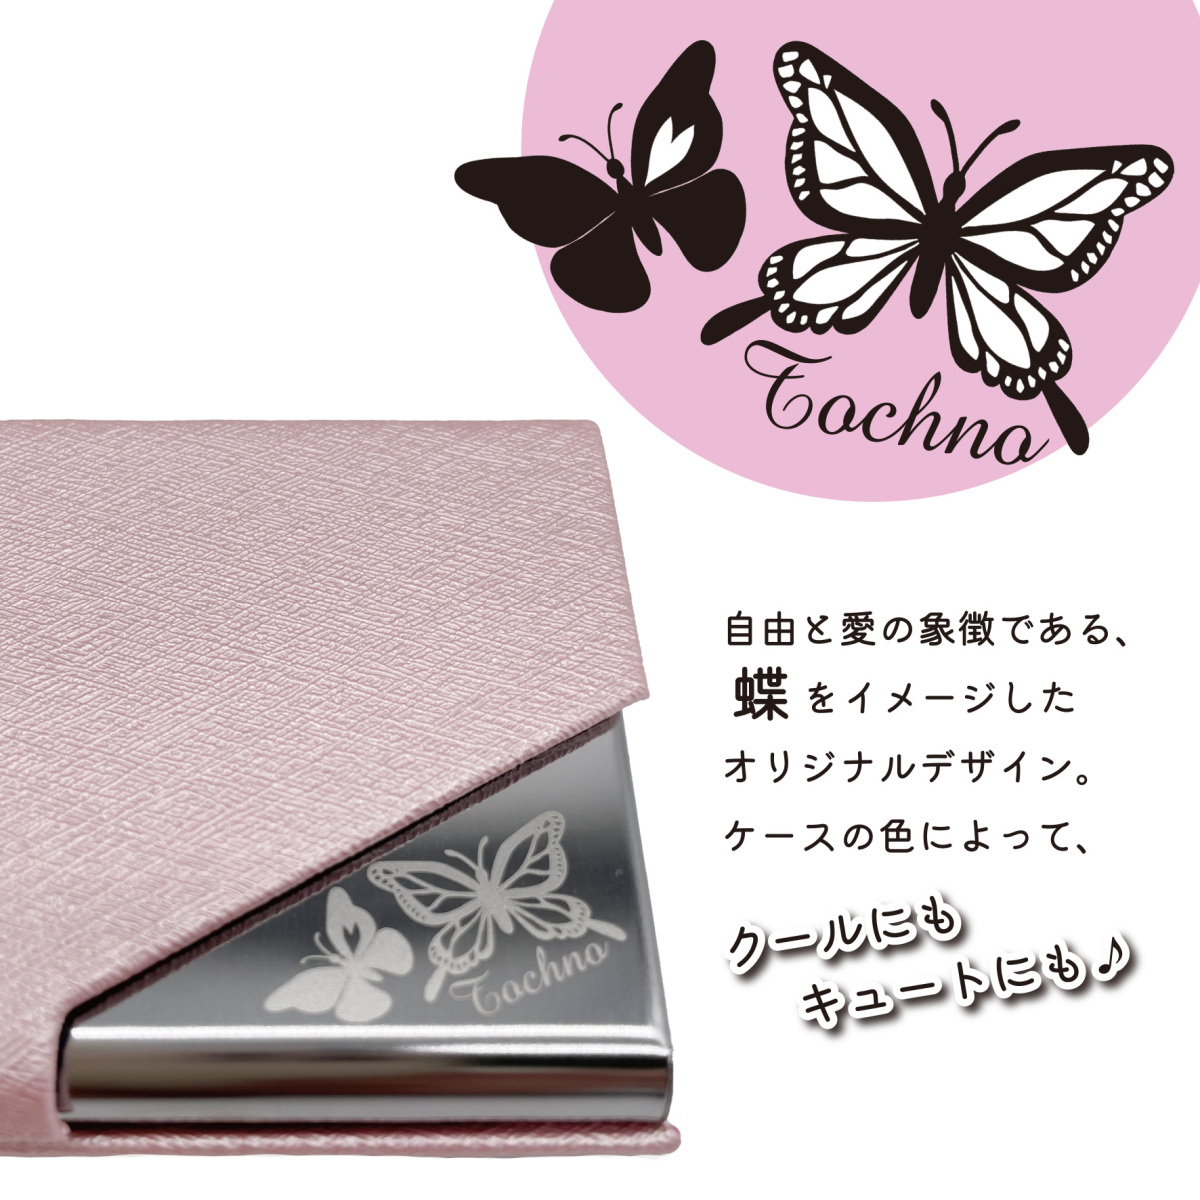 Tochno card-case case lady's stylish lovely butterfly pink purple Gold silver gray black navy 